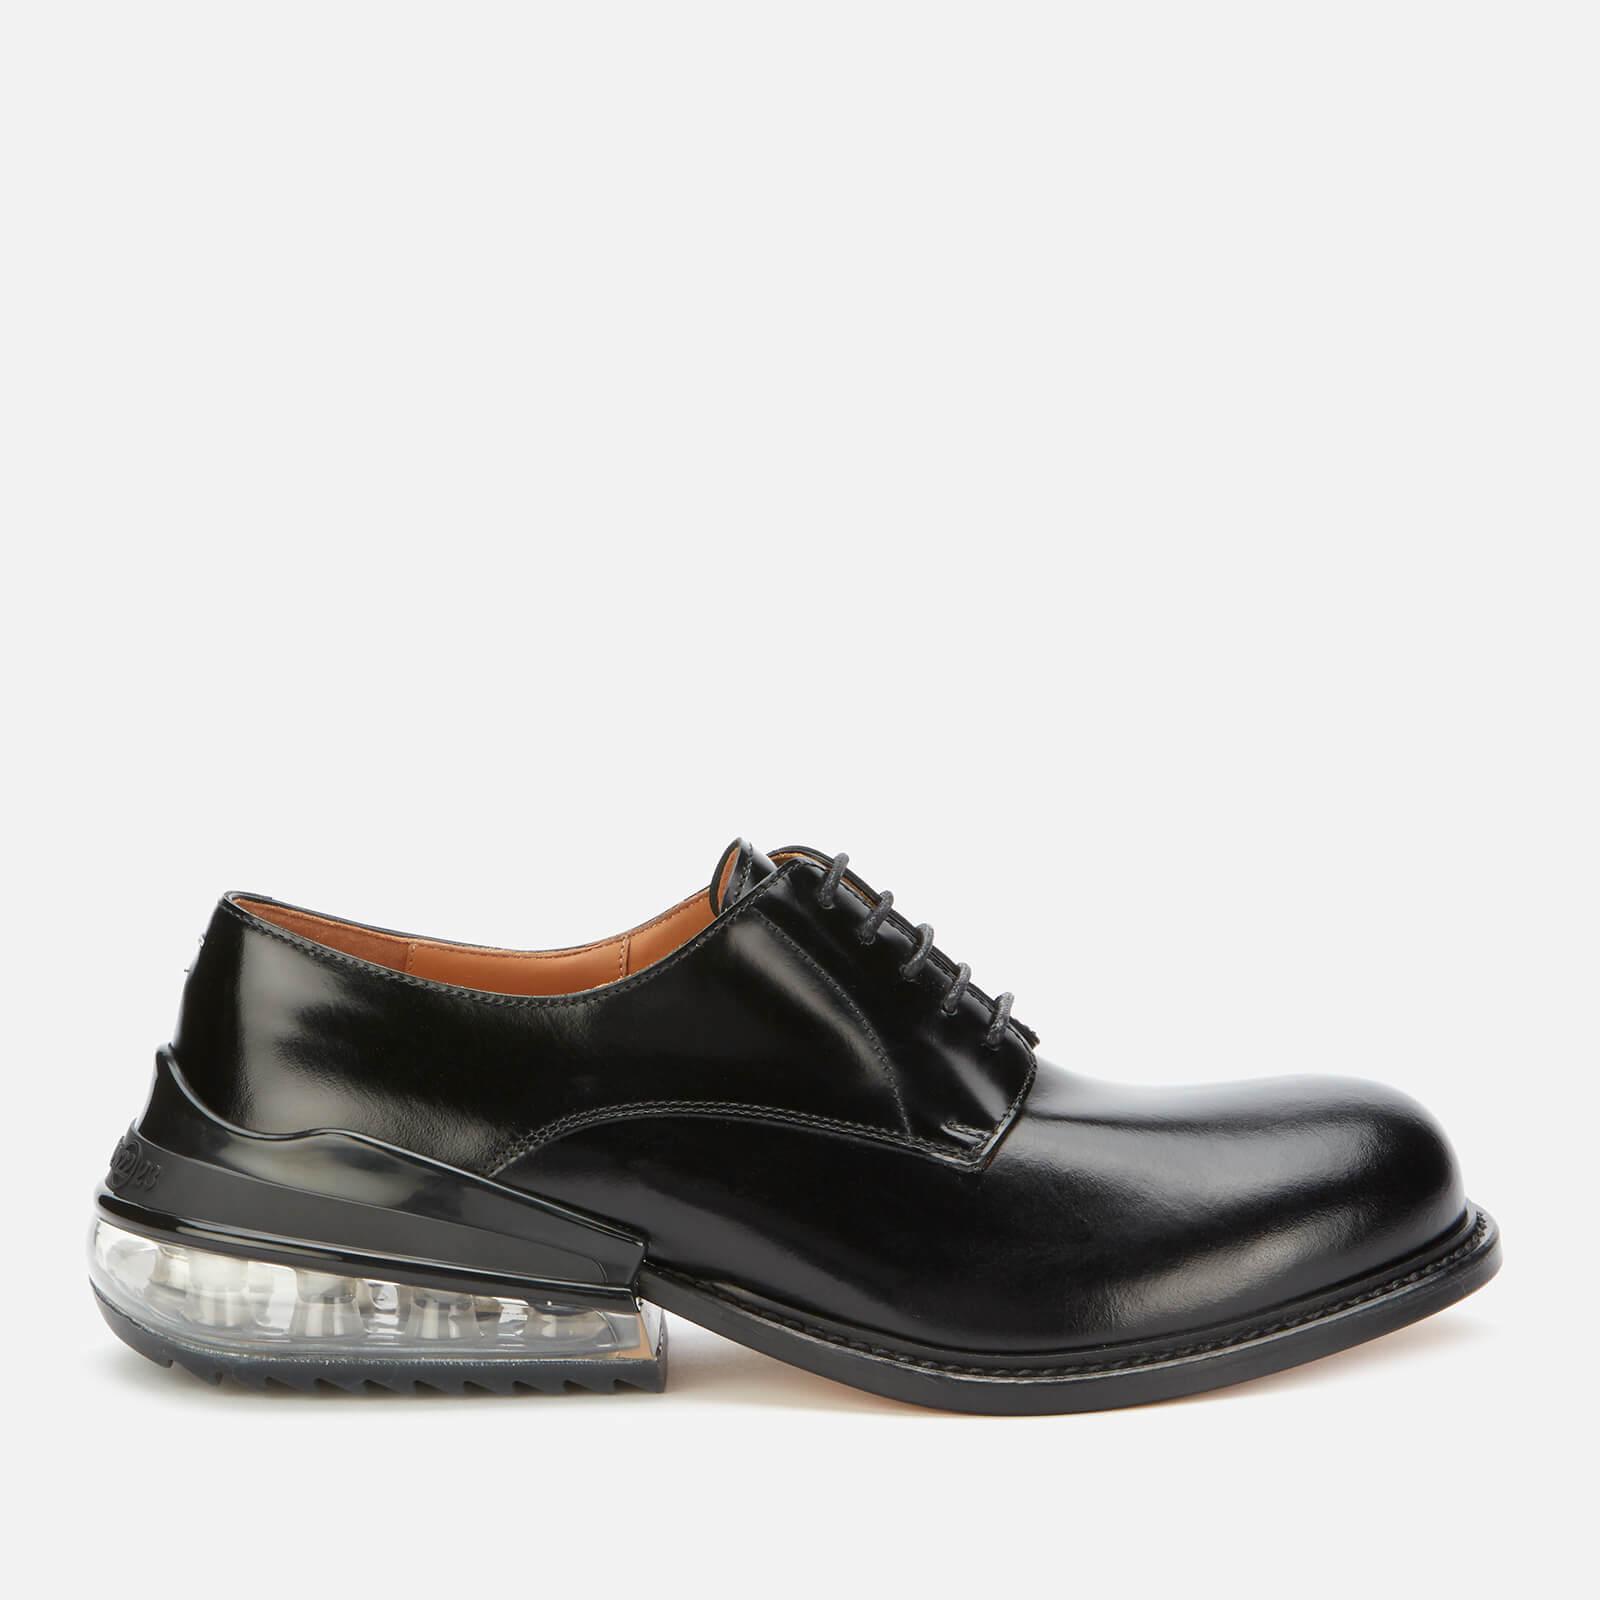 Mason Martin Margiela leather shoes